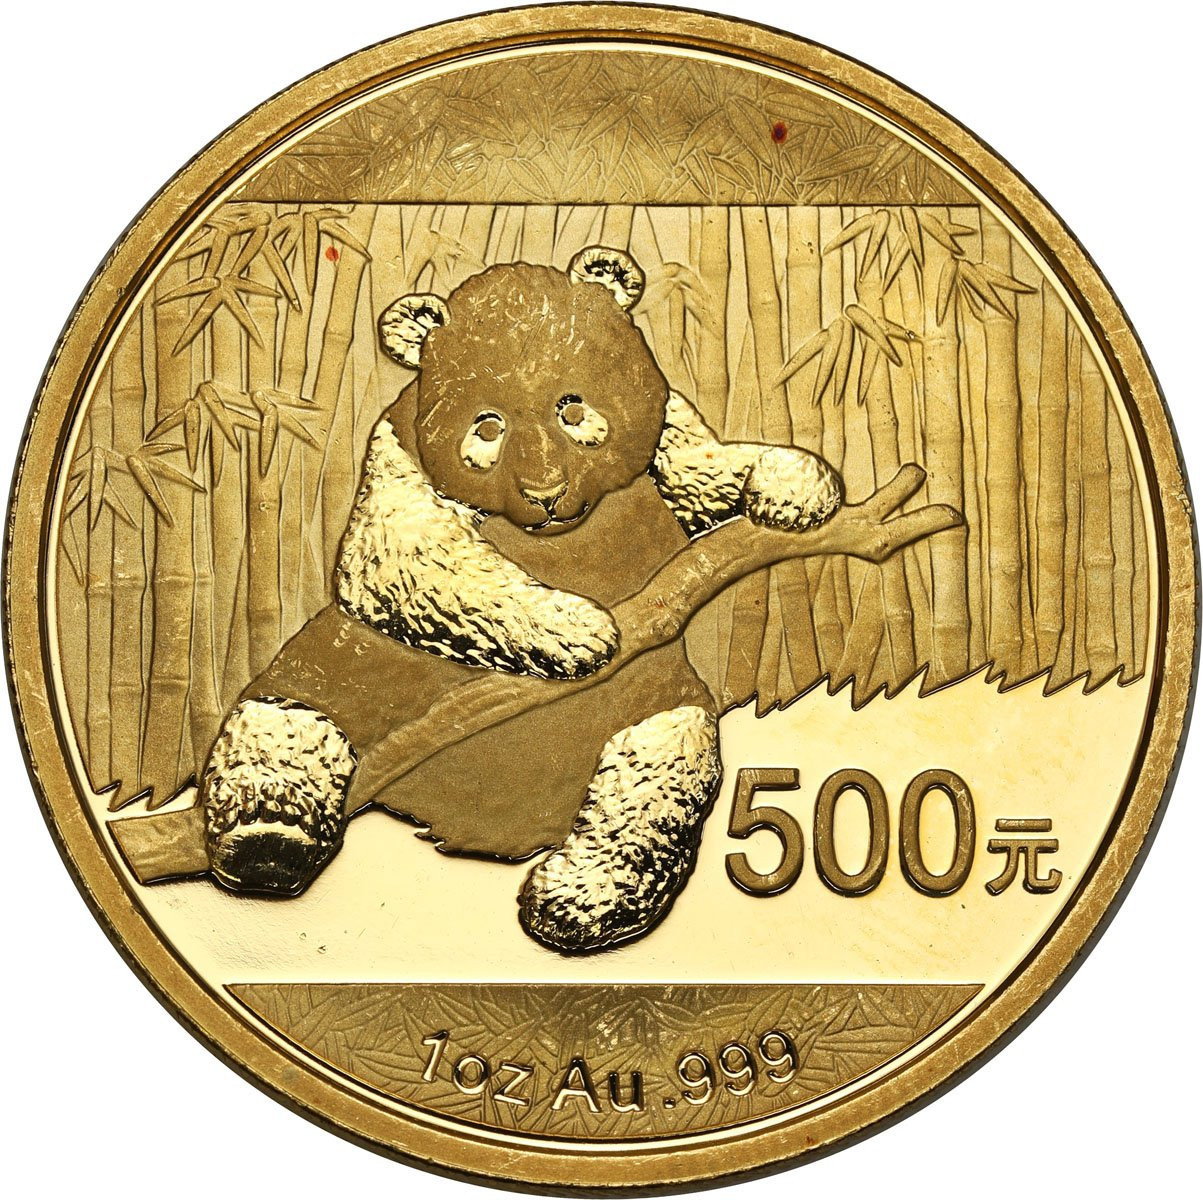 Chiny. 500 Yuan 2014 Panda - Uncja złota